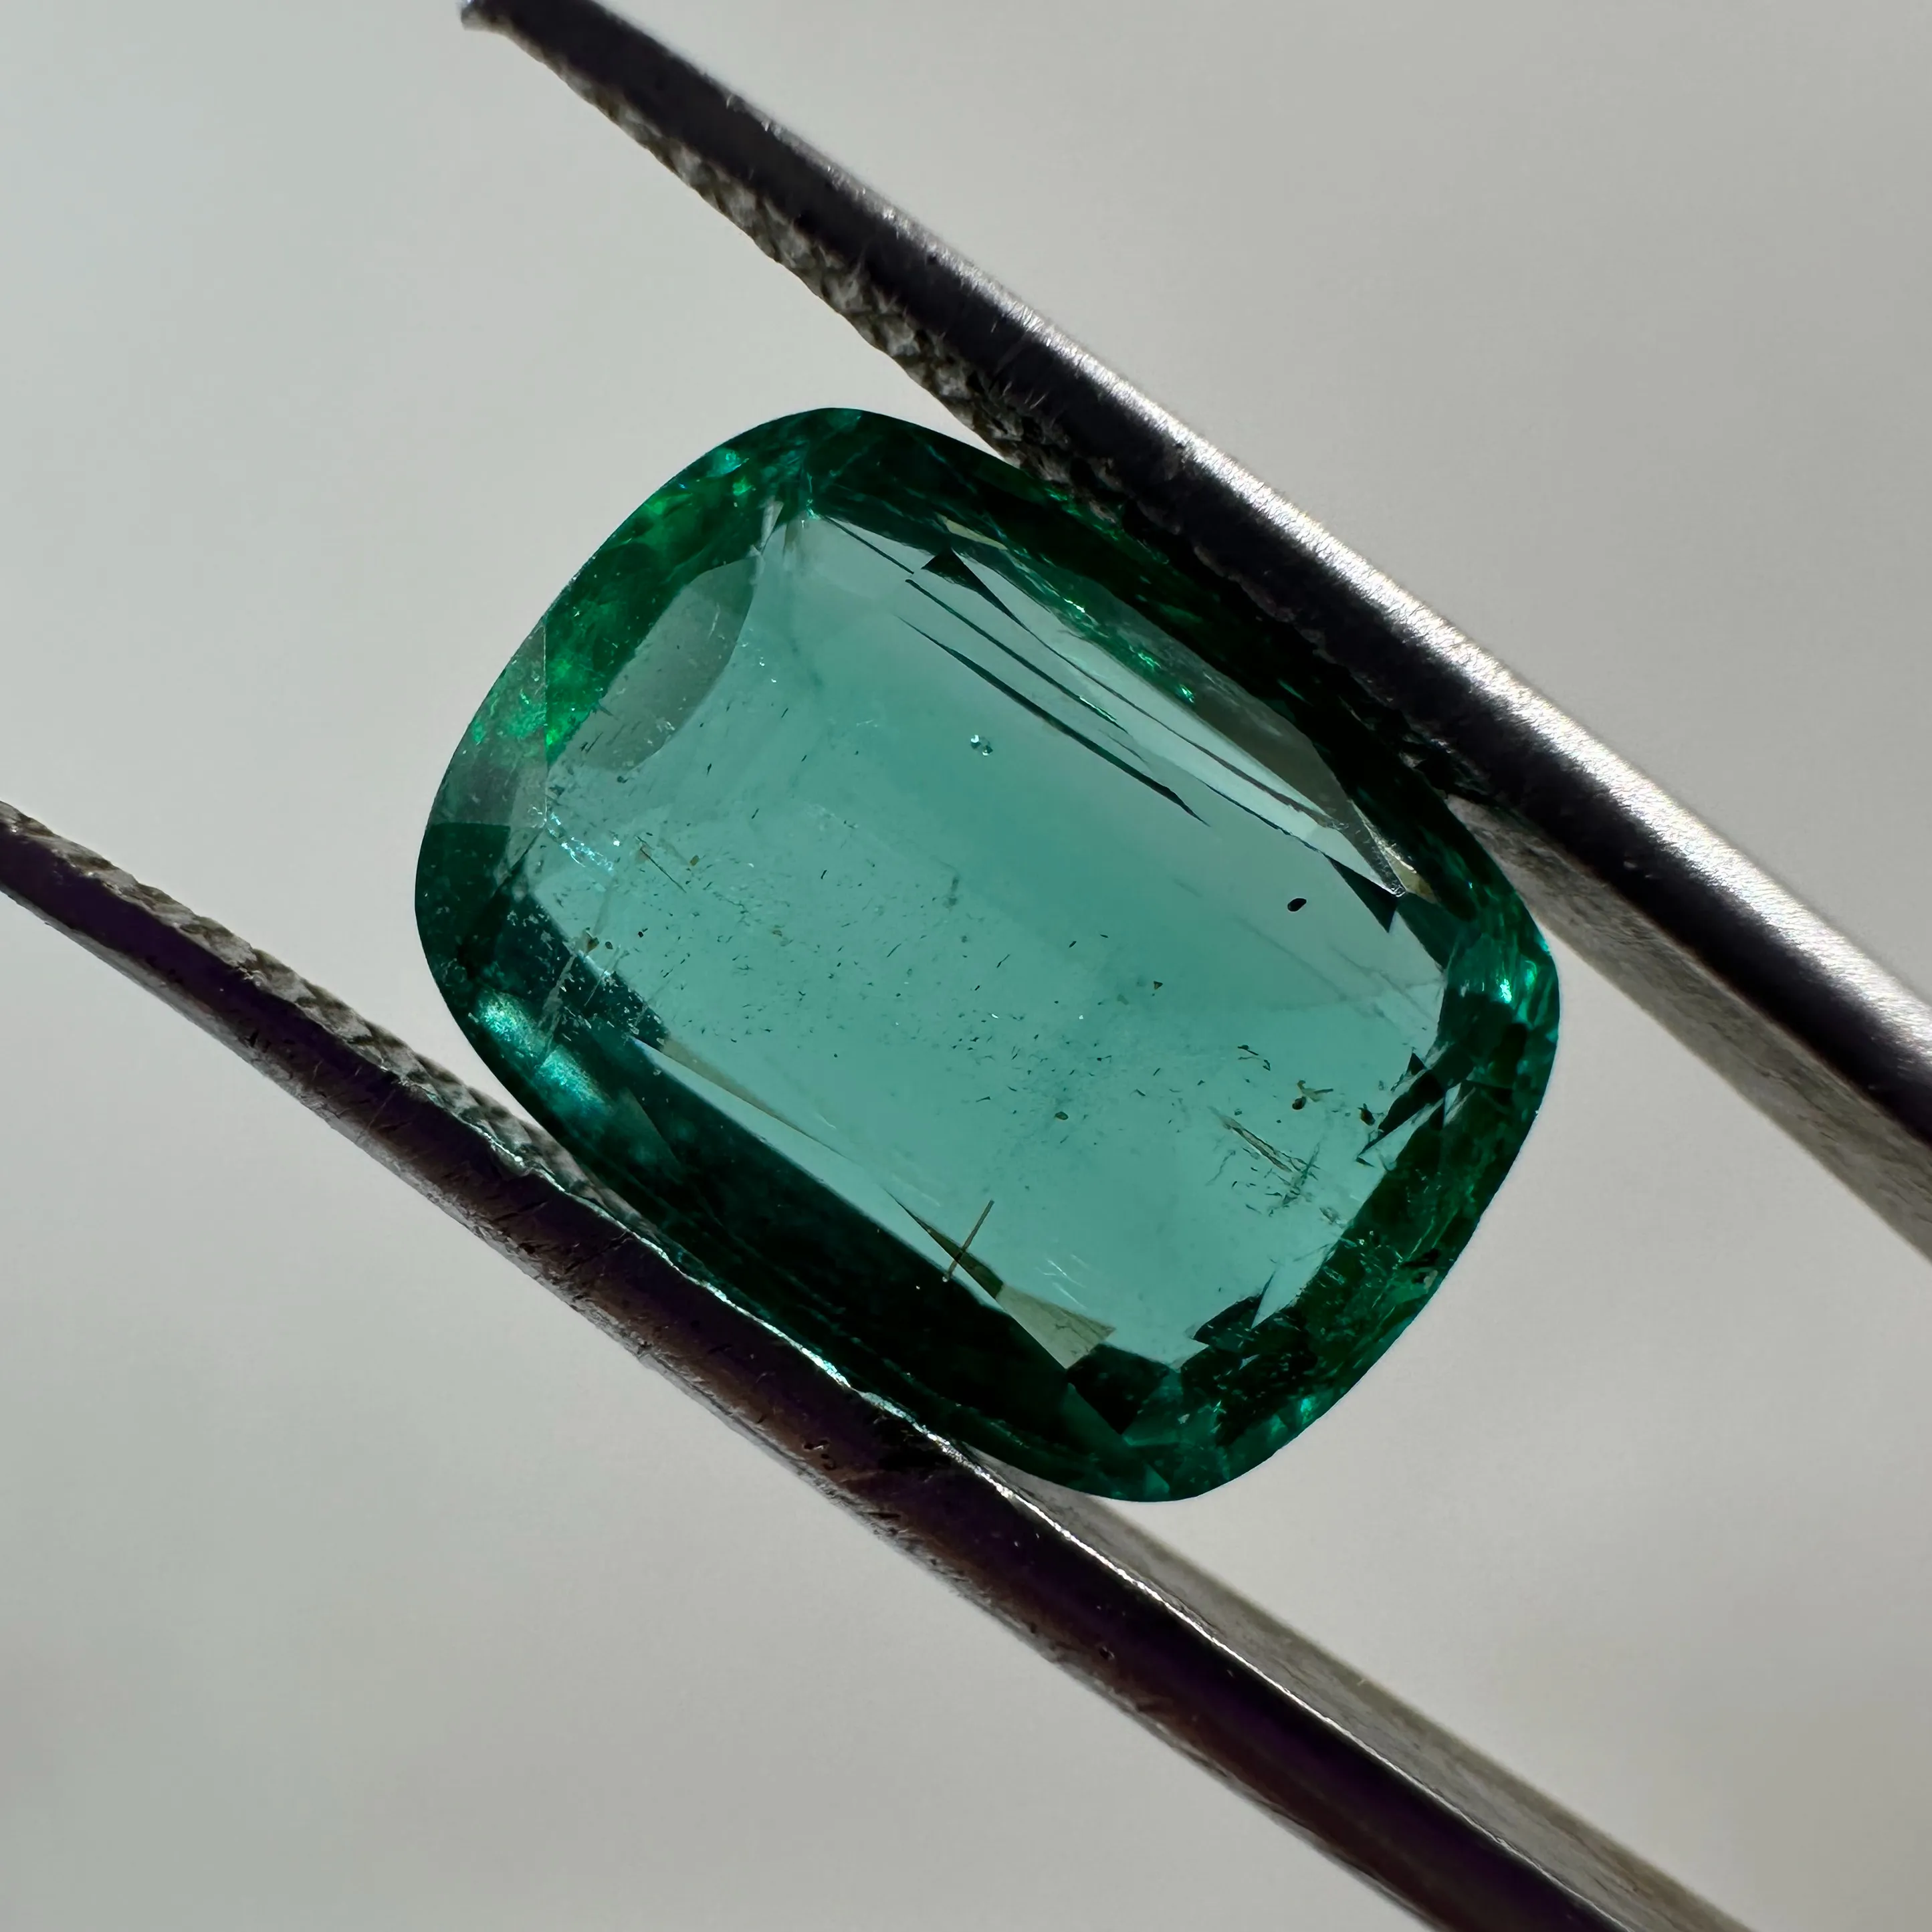 Verde azulado de alta calidad, 4 quilates, transparente, Natural, esmeralda de Zambia, piedra preciosa suelta de Esmeralda Natural, lote de piedras preciosas sueltas